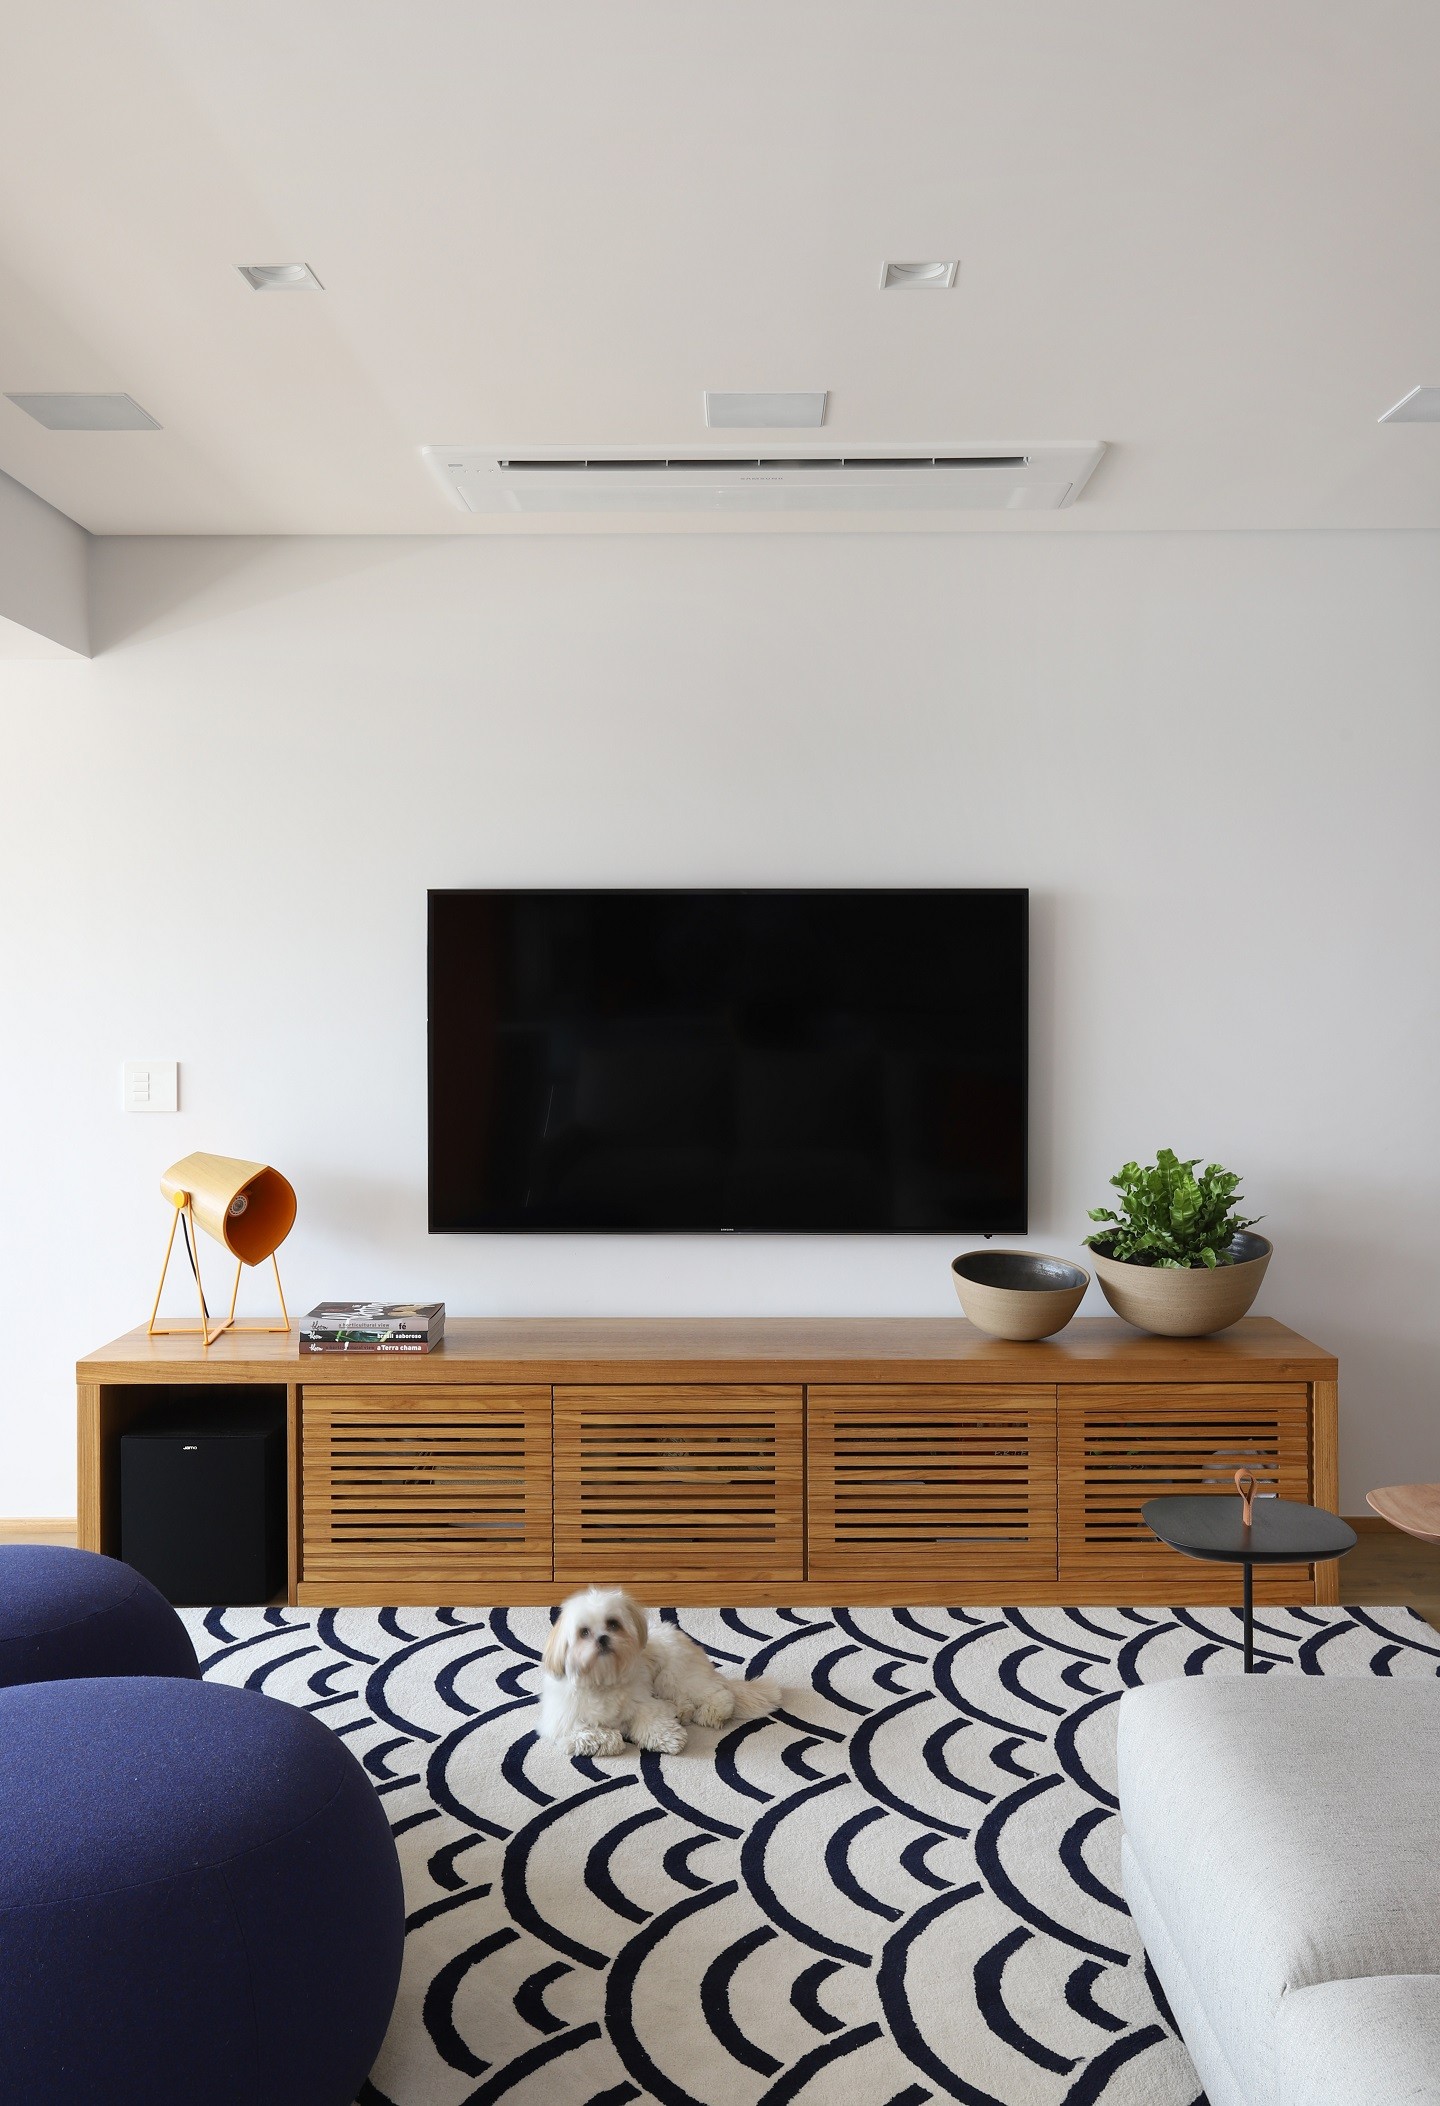 Cores, texturas e integração renovam apartamento de 189 m² (Foto: Mariana Orsi)